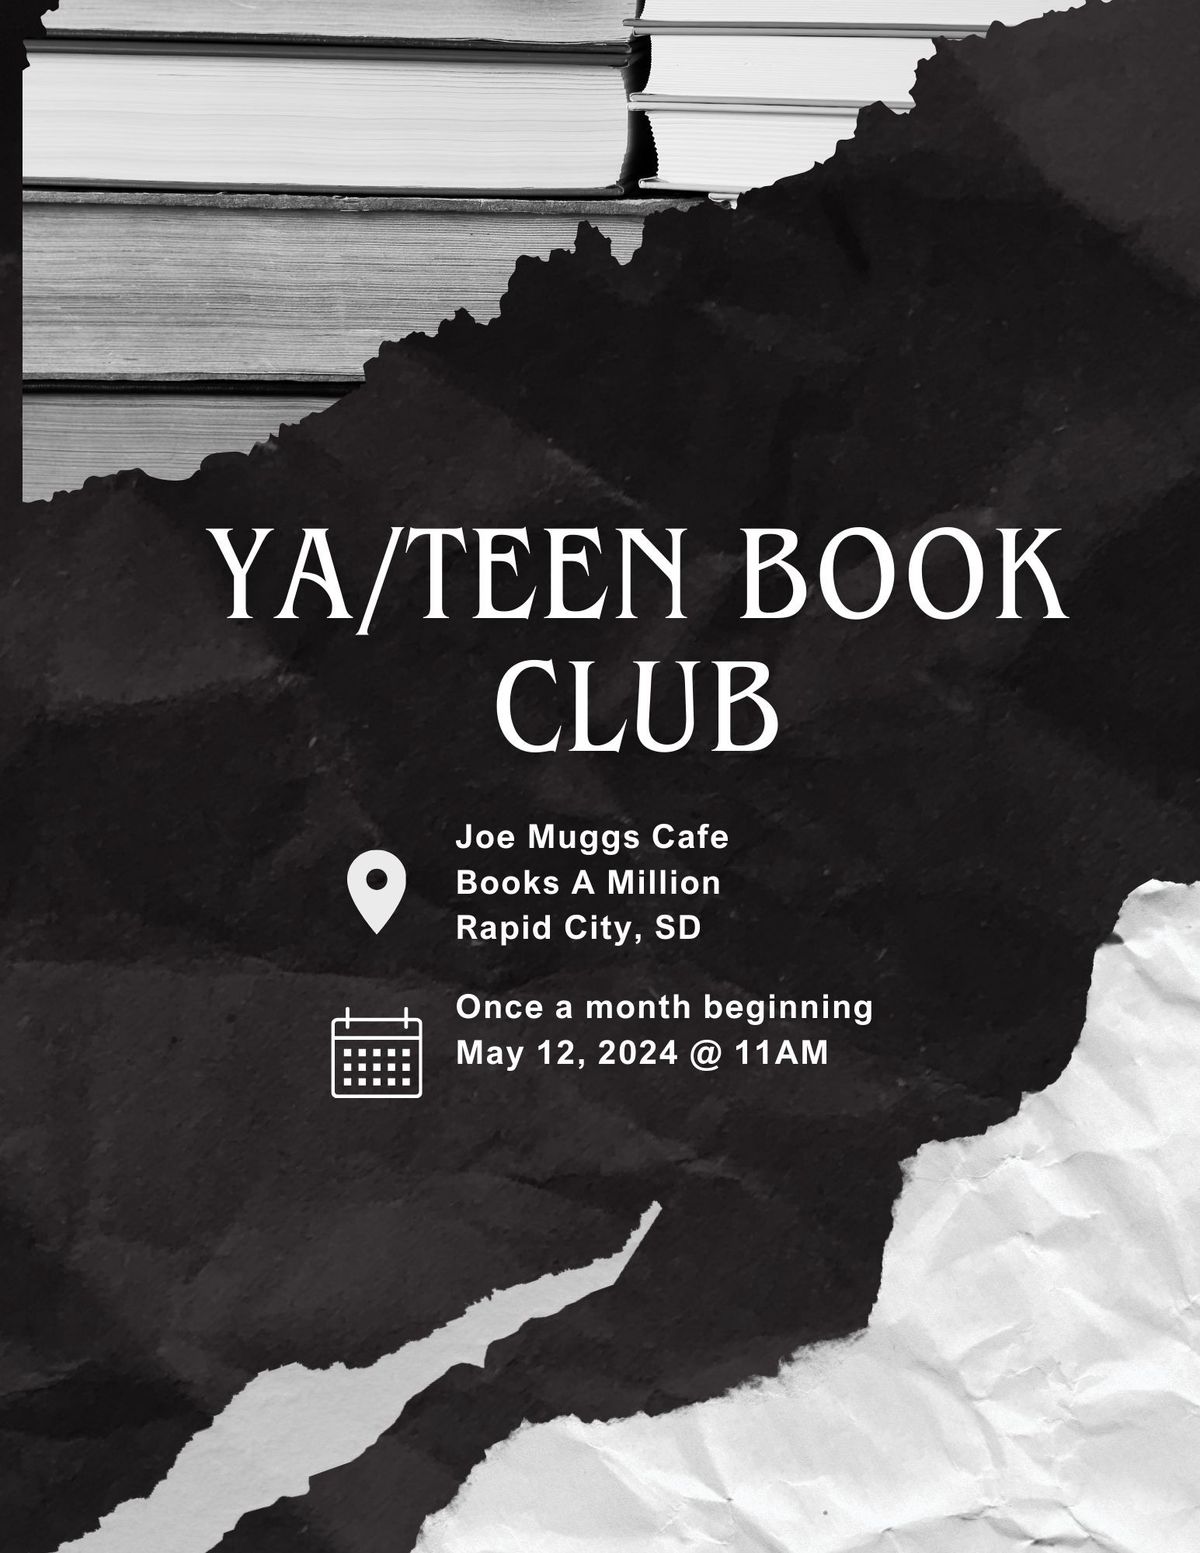 BAM YA Book Club!